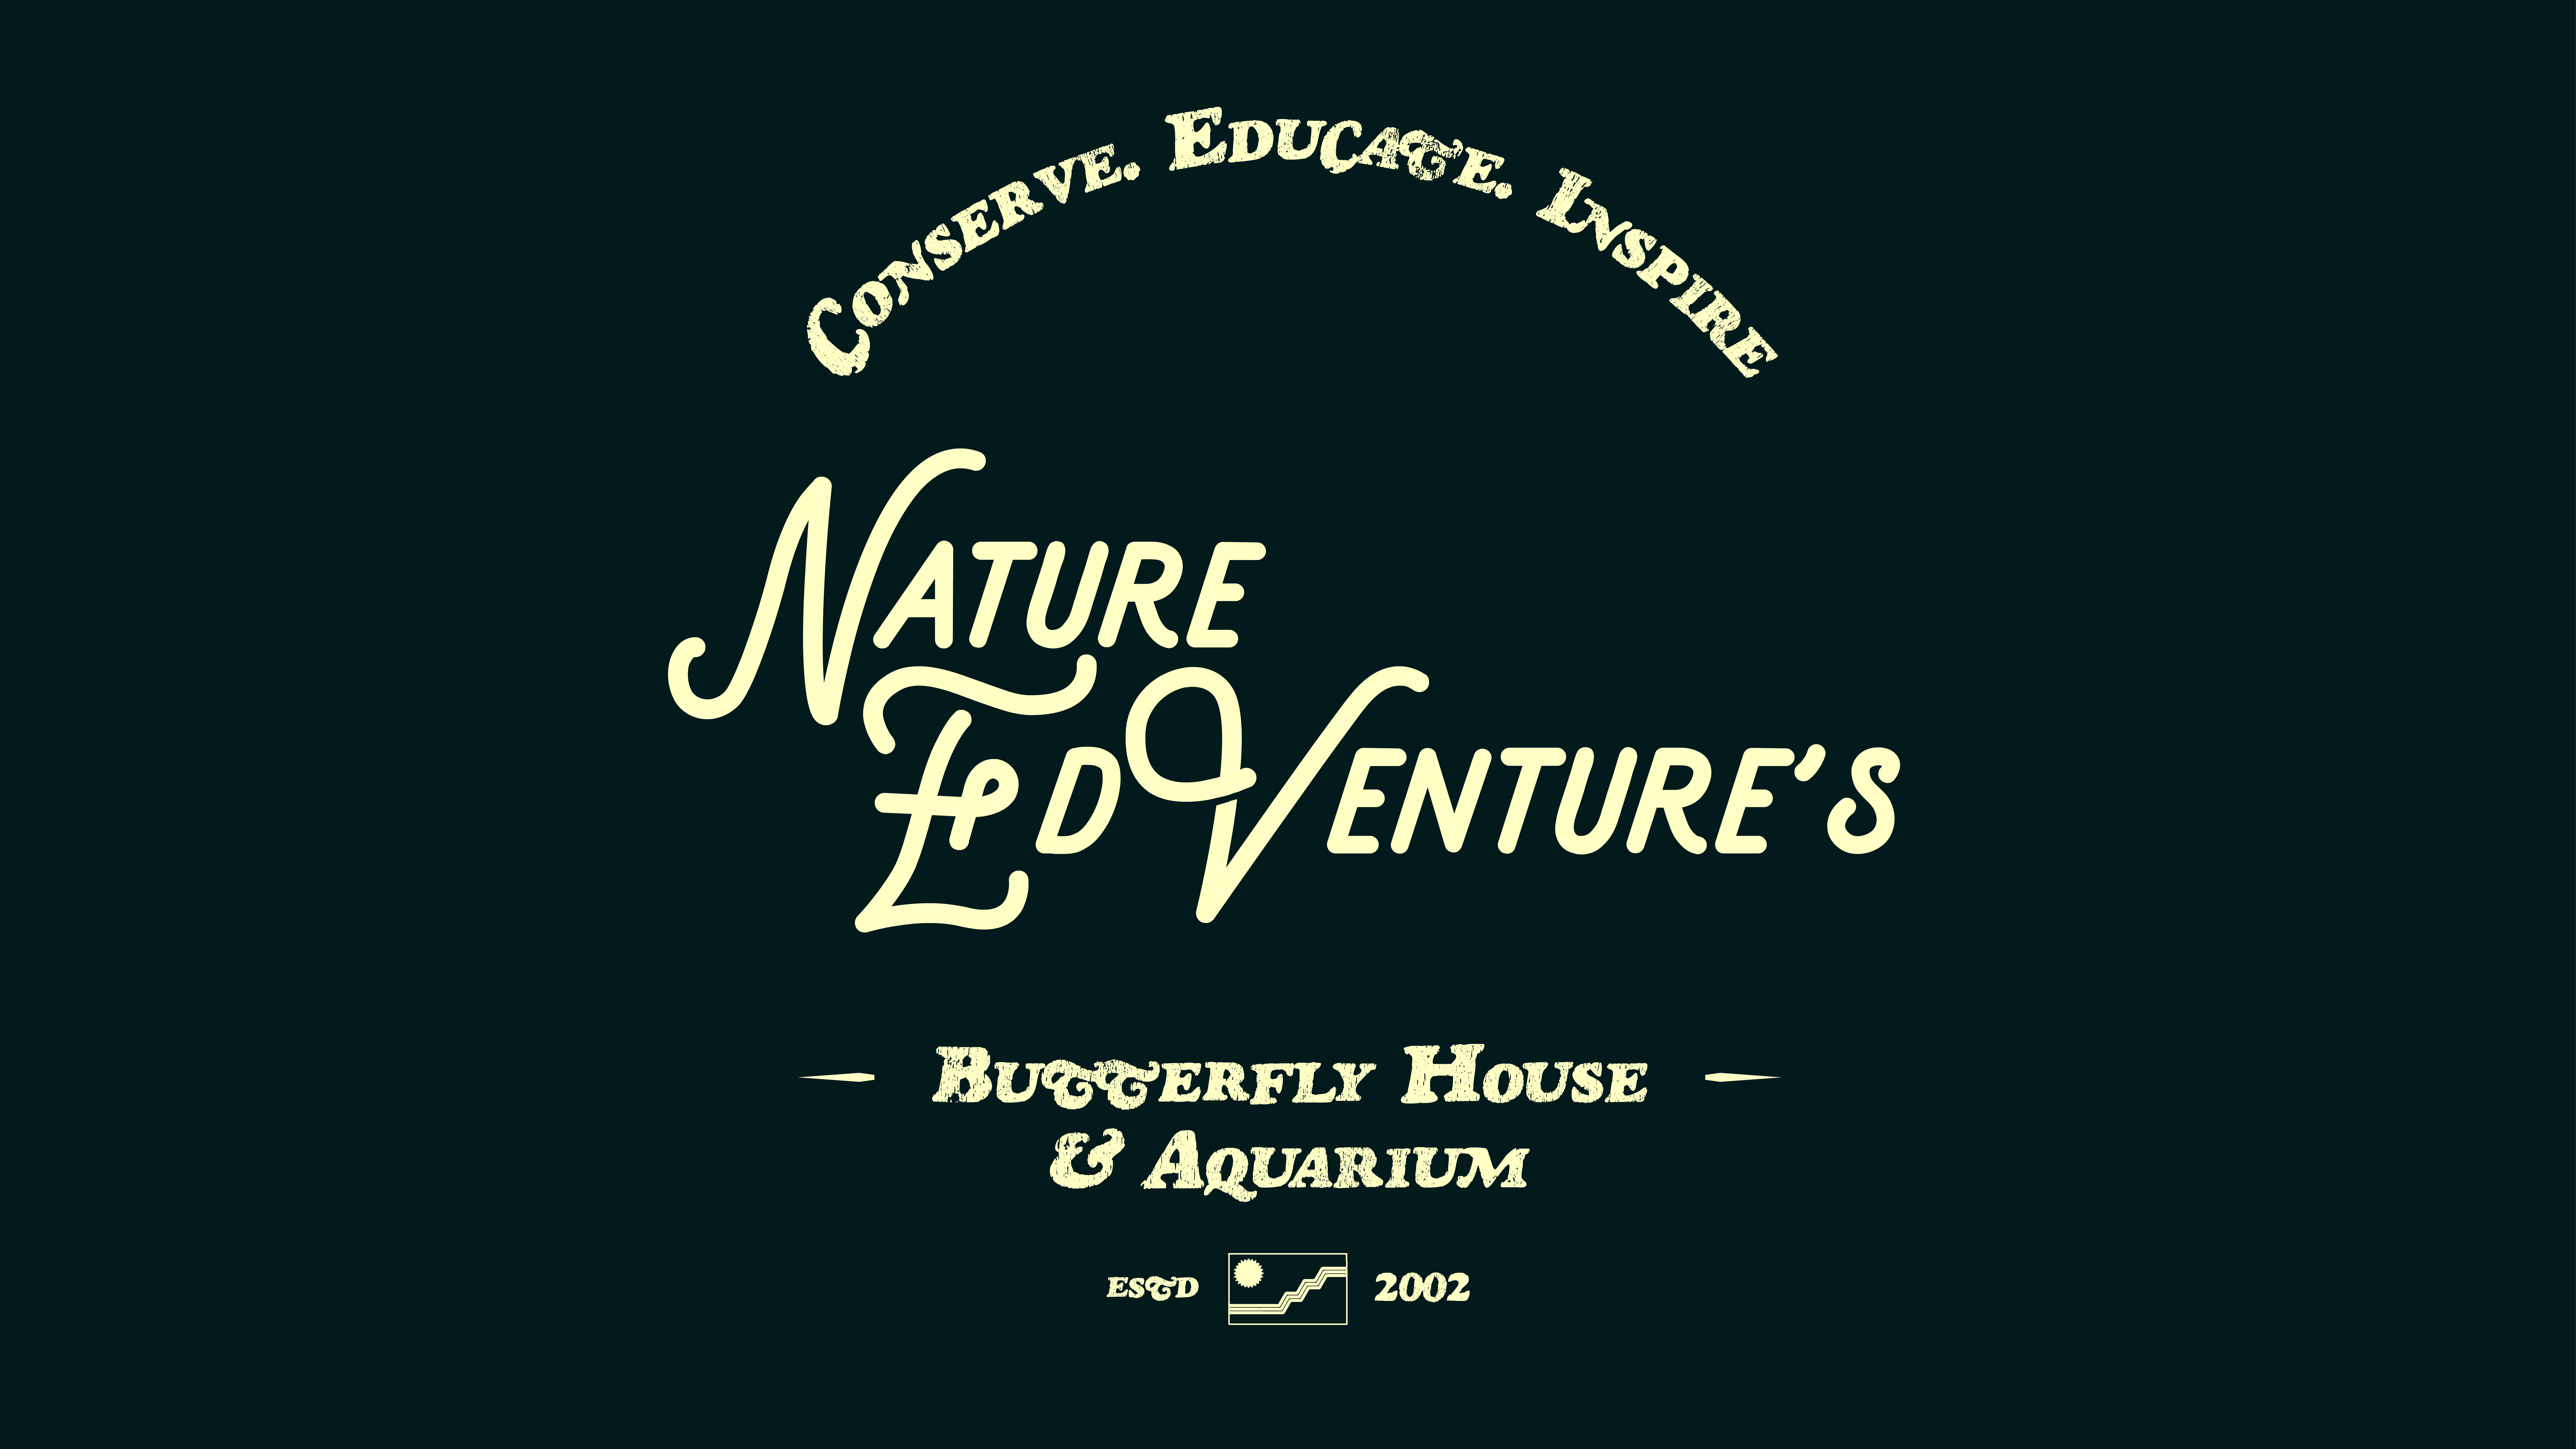 Nature Ed Ventures